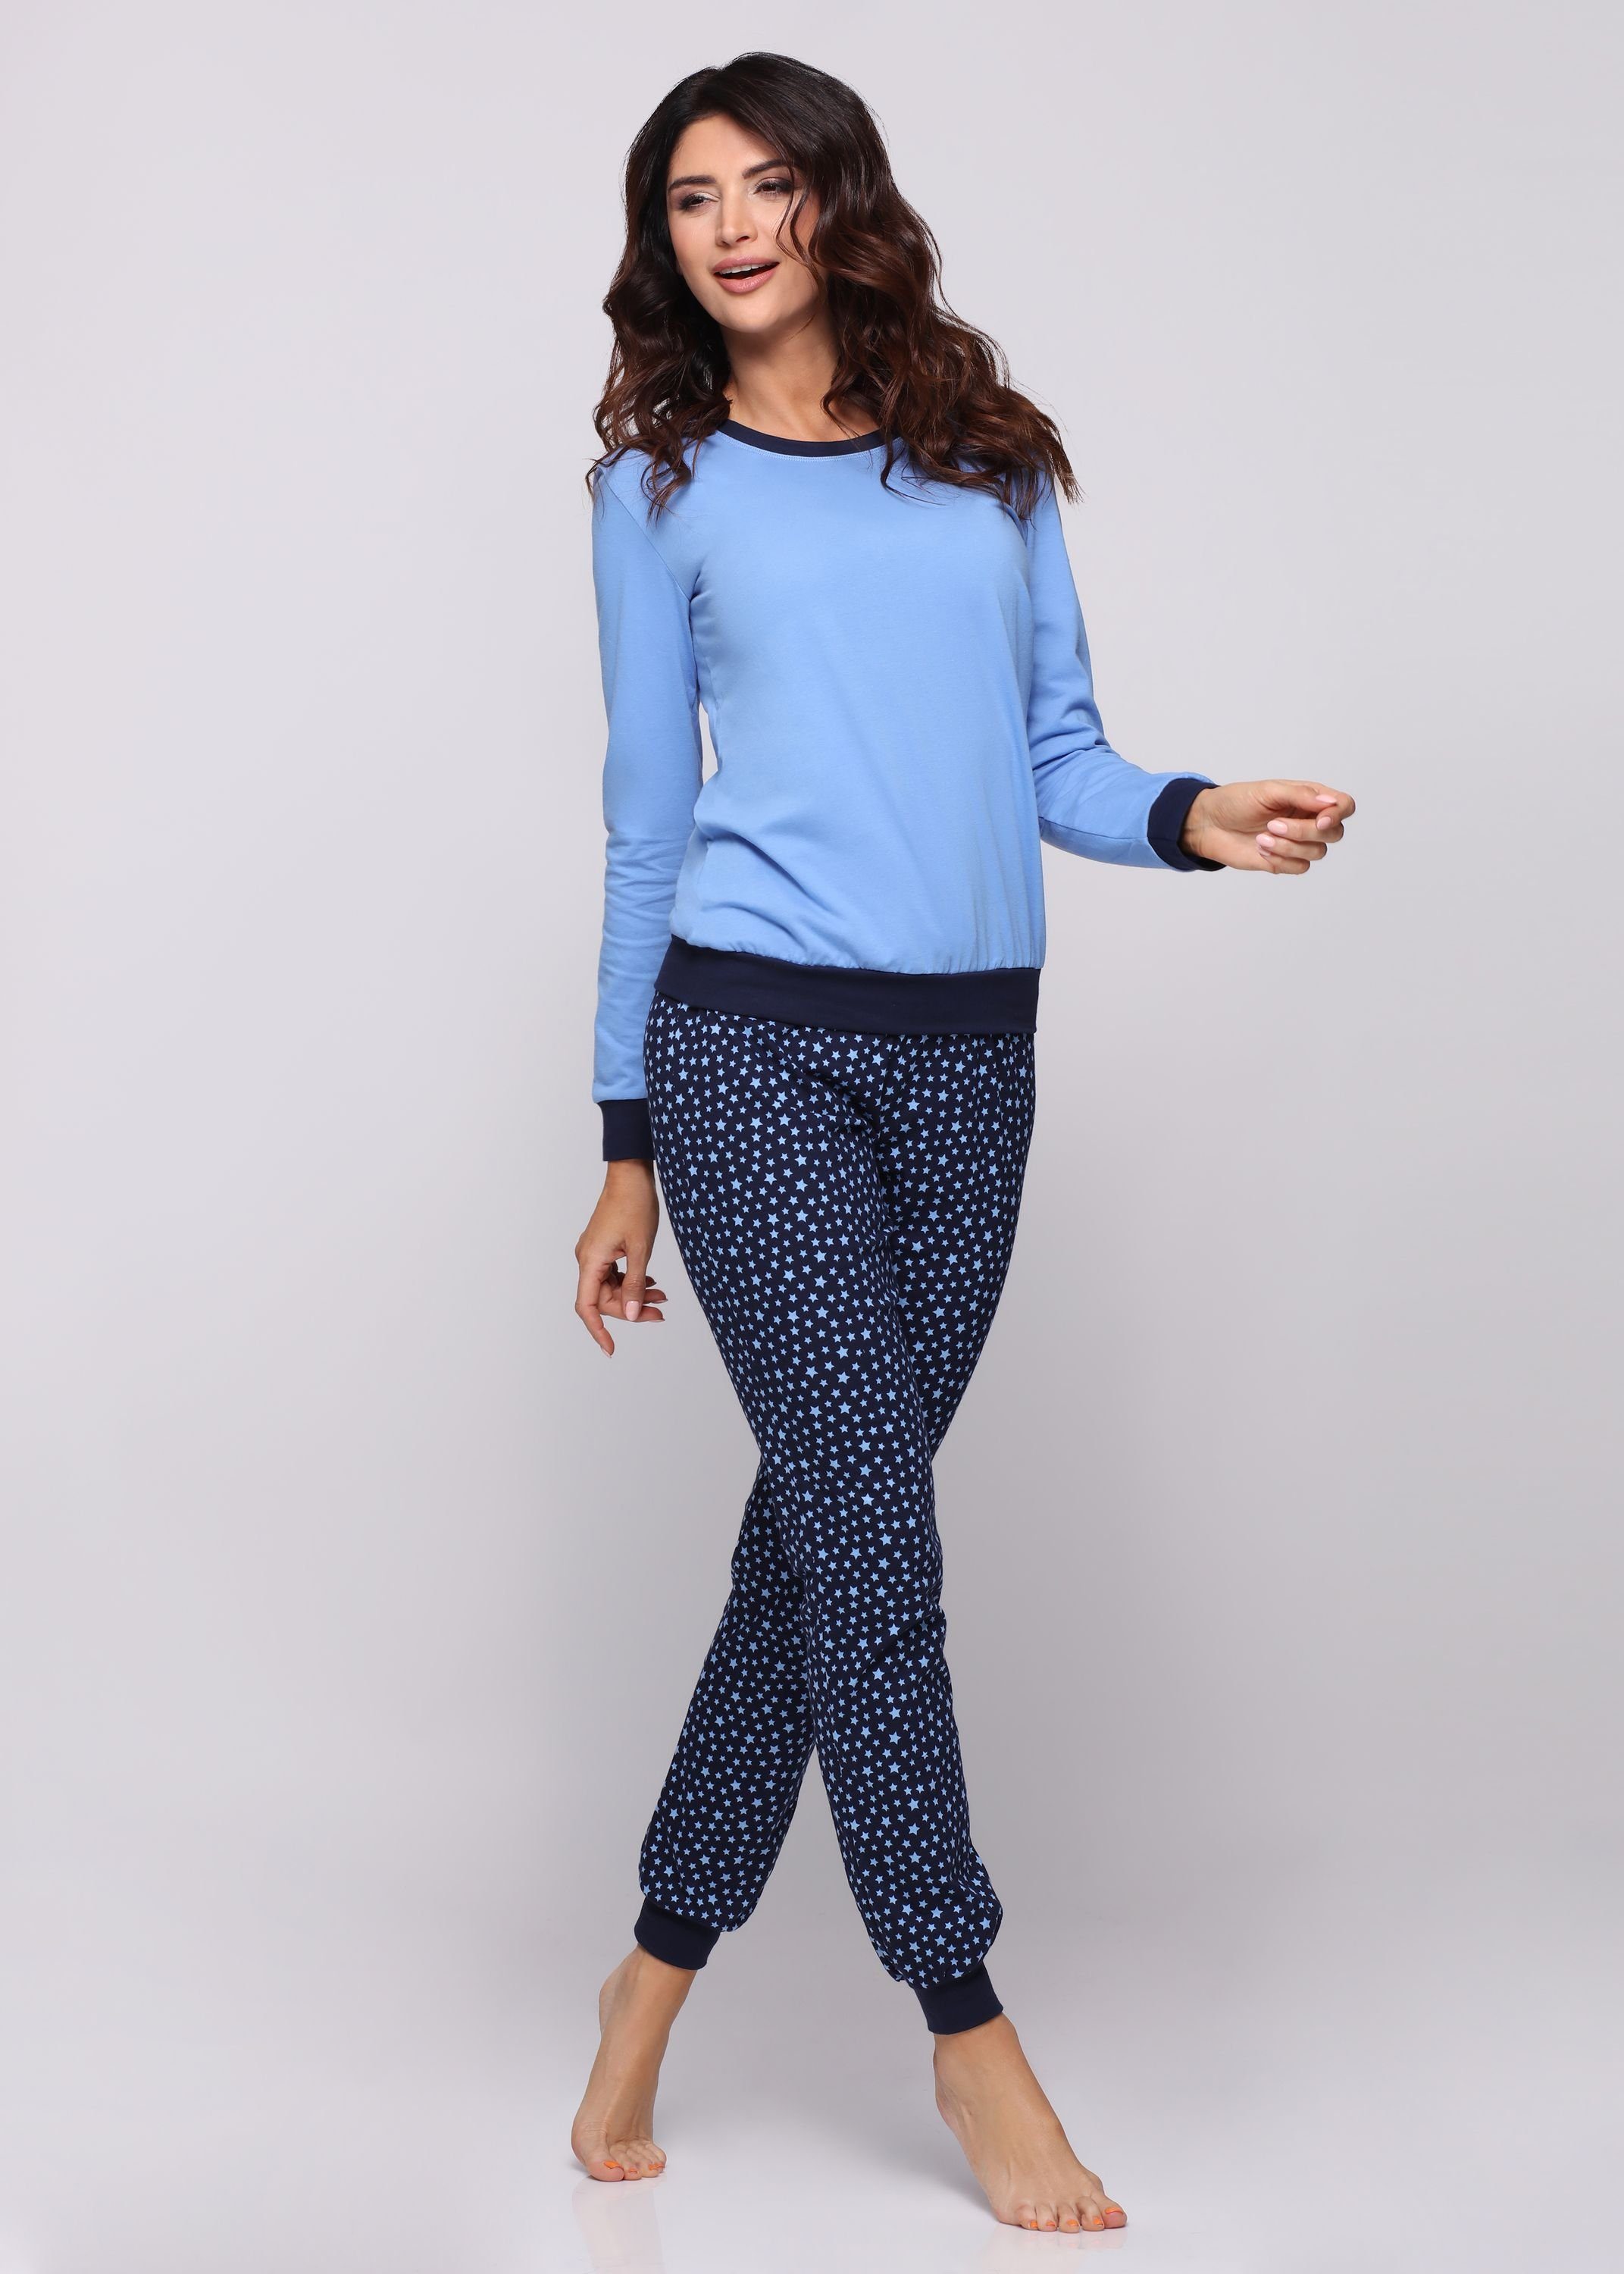 Marineblau Zweiteiler Schlafanzug lang MS10-268 Damen Style Schlafanzug Pyjama Blau/Sterne Muster mit bunt Merry